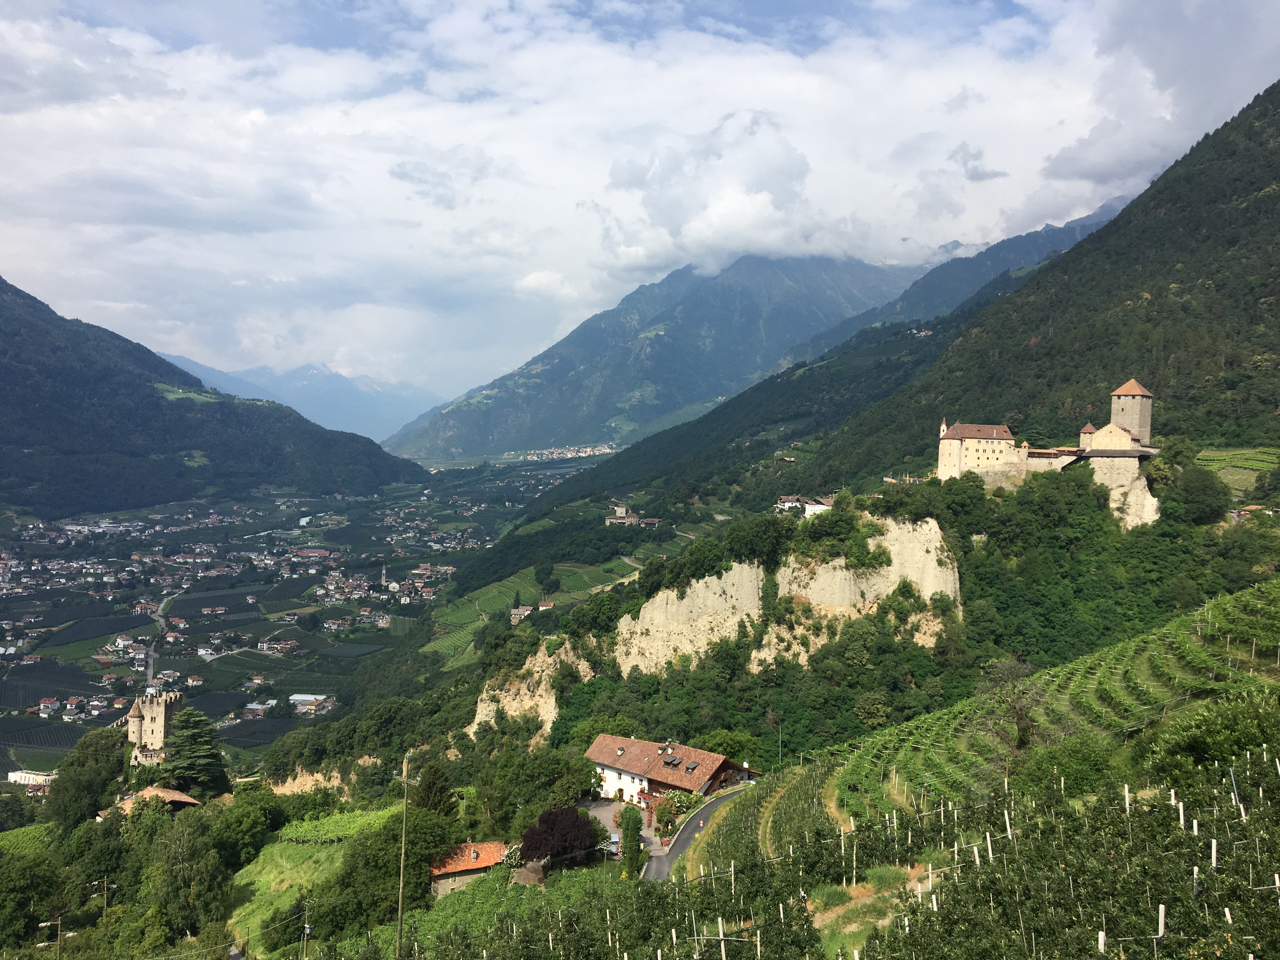 Ein letzter Blick auf Schloss Tirol und den Vinschgau